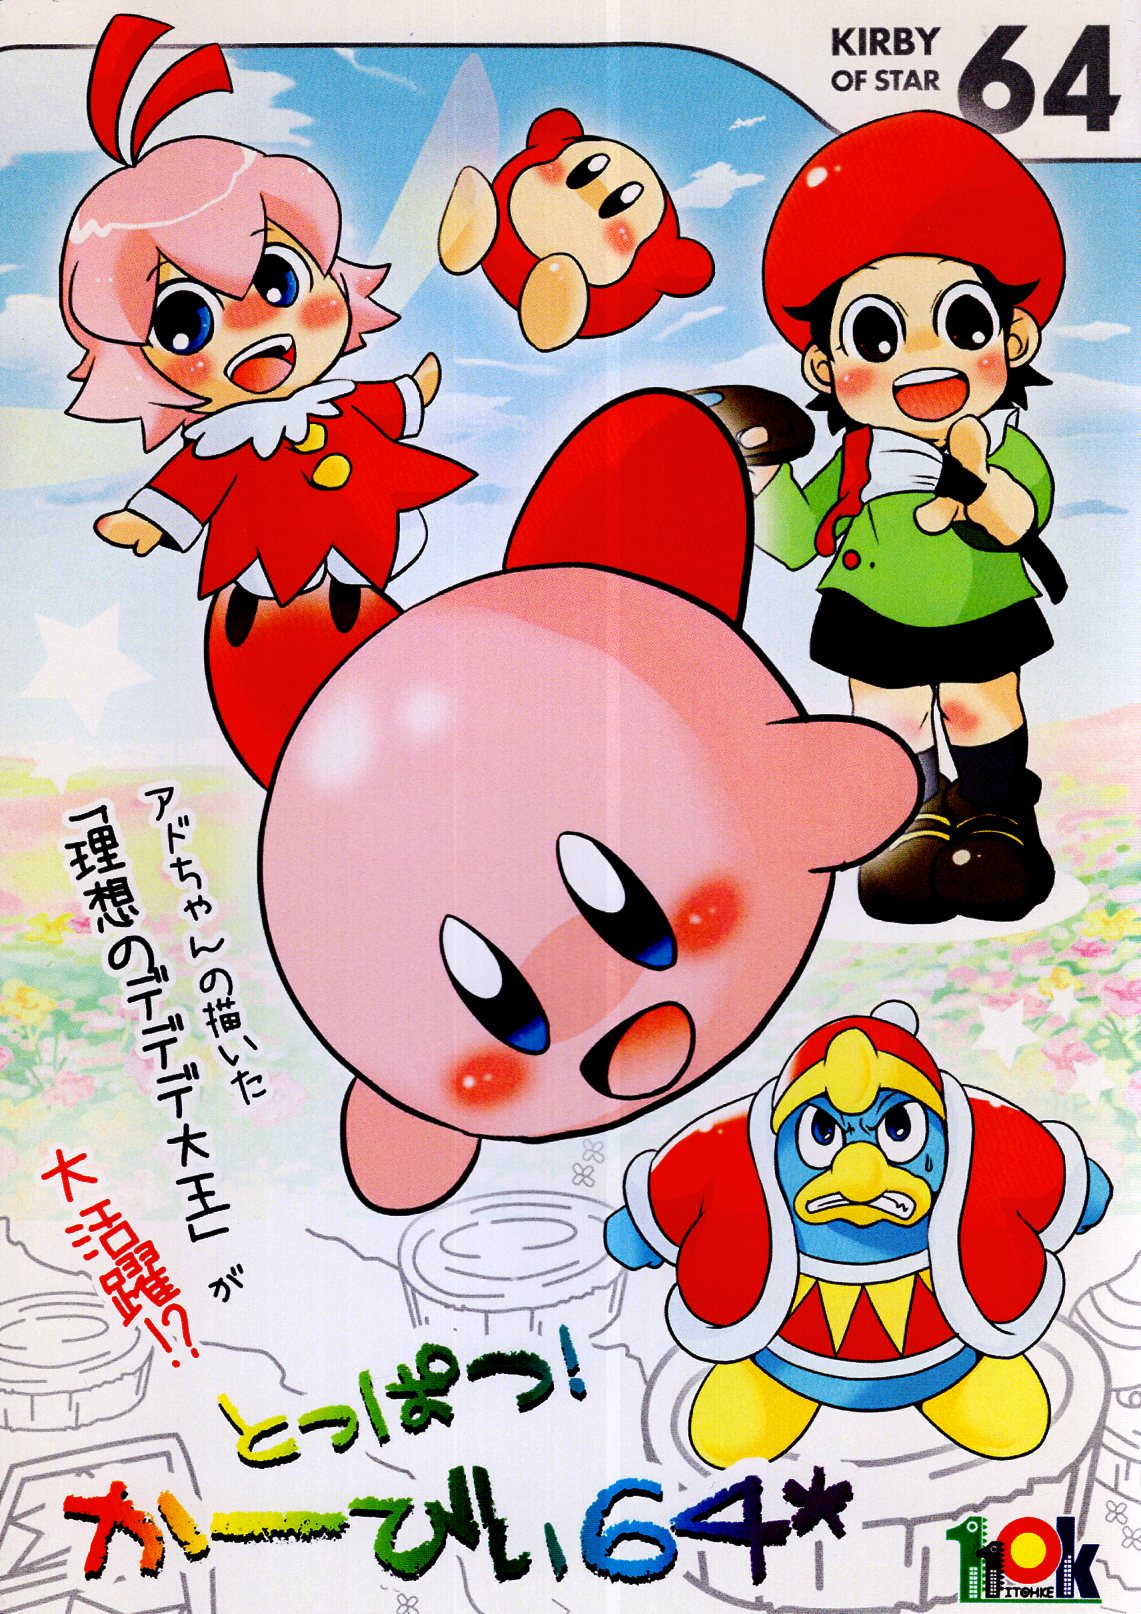 110K (Ito Ruku) Topatsu! Kirby 64* | Mandarake Online Shop